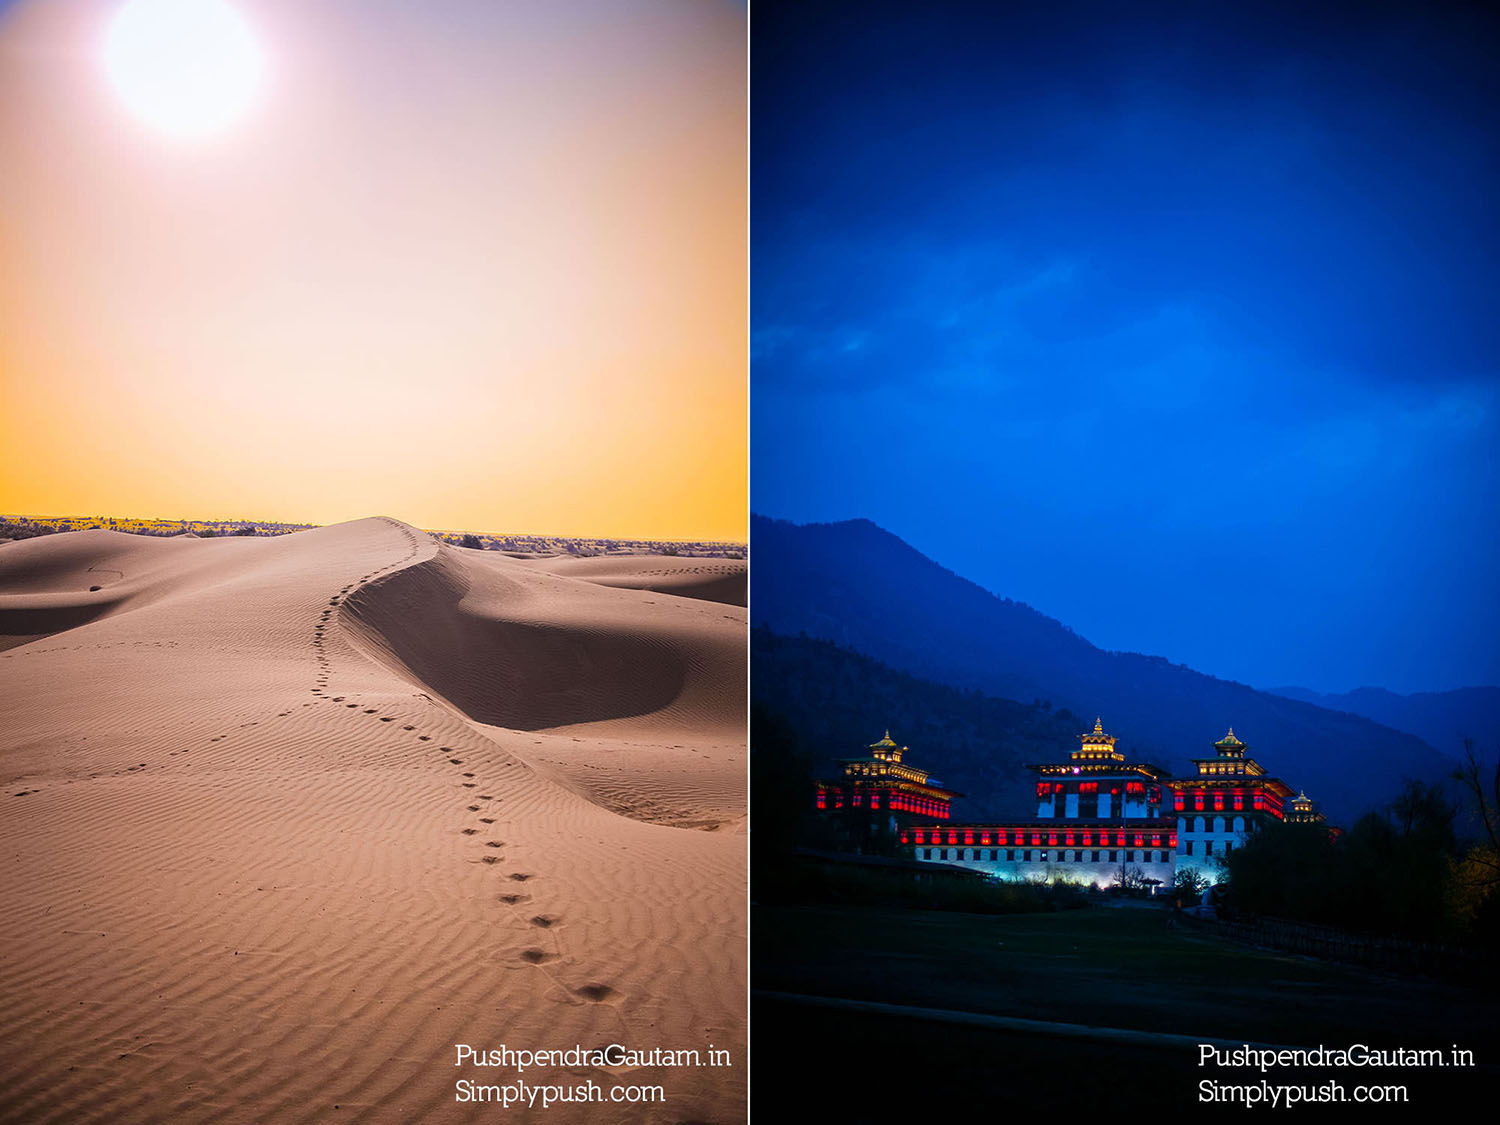 Best-travel-quotes-inspirational-travel-quotes-pushpendragautam-pics-event-photographer-india